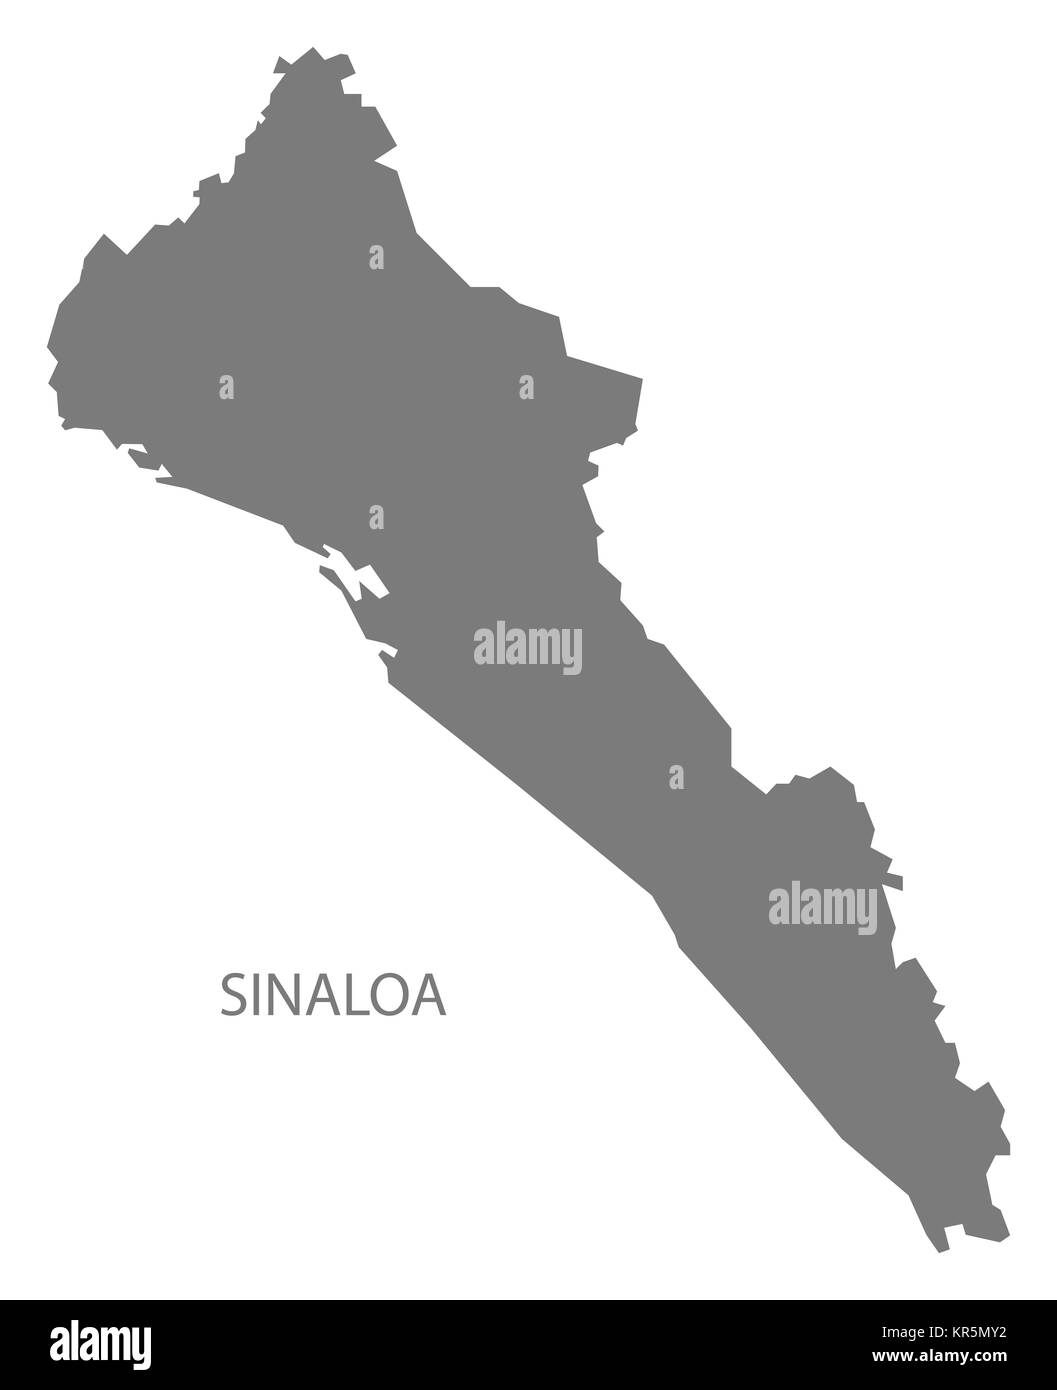 Sinaloa Mexico Map grey Stock Photo